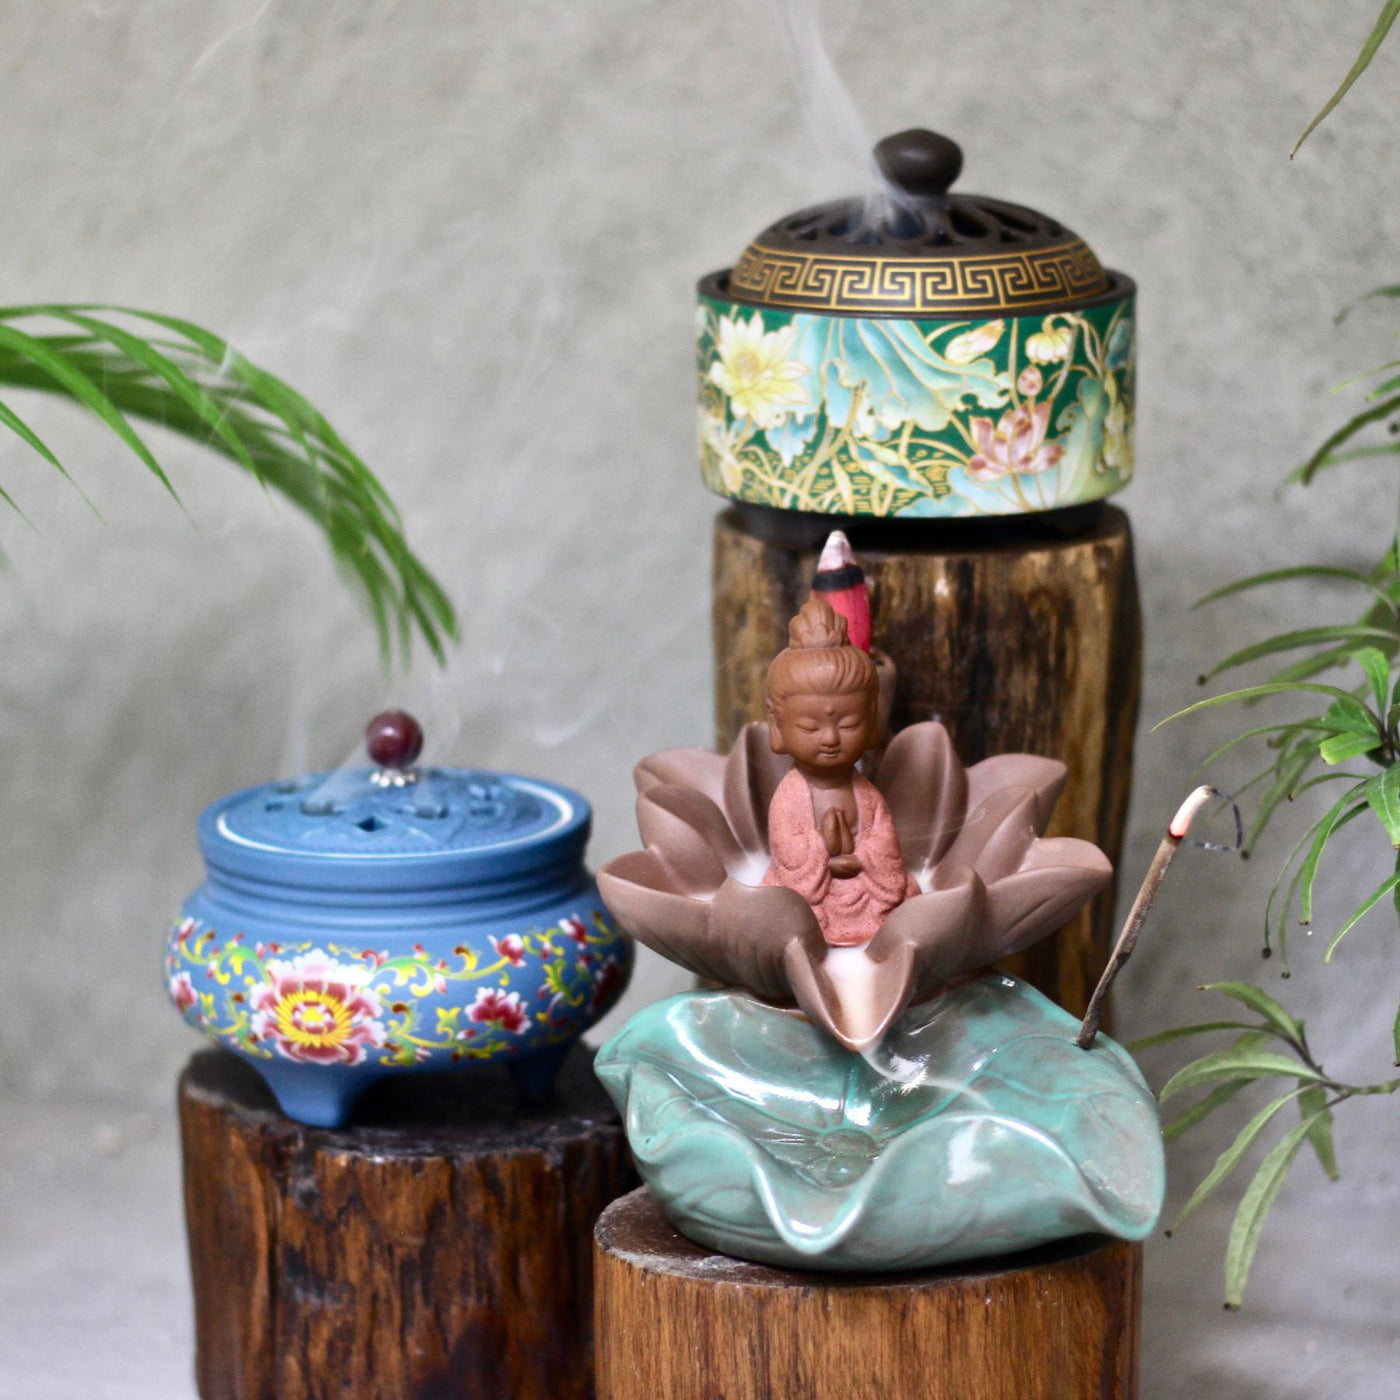 Lotus Ceramic Incense Burner – Mora Taara